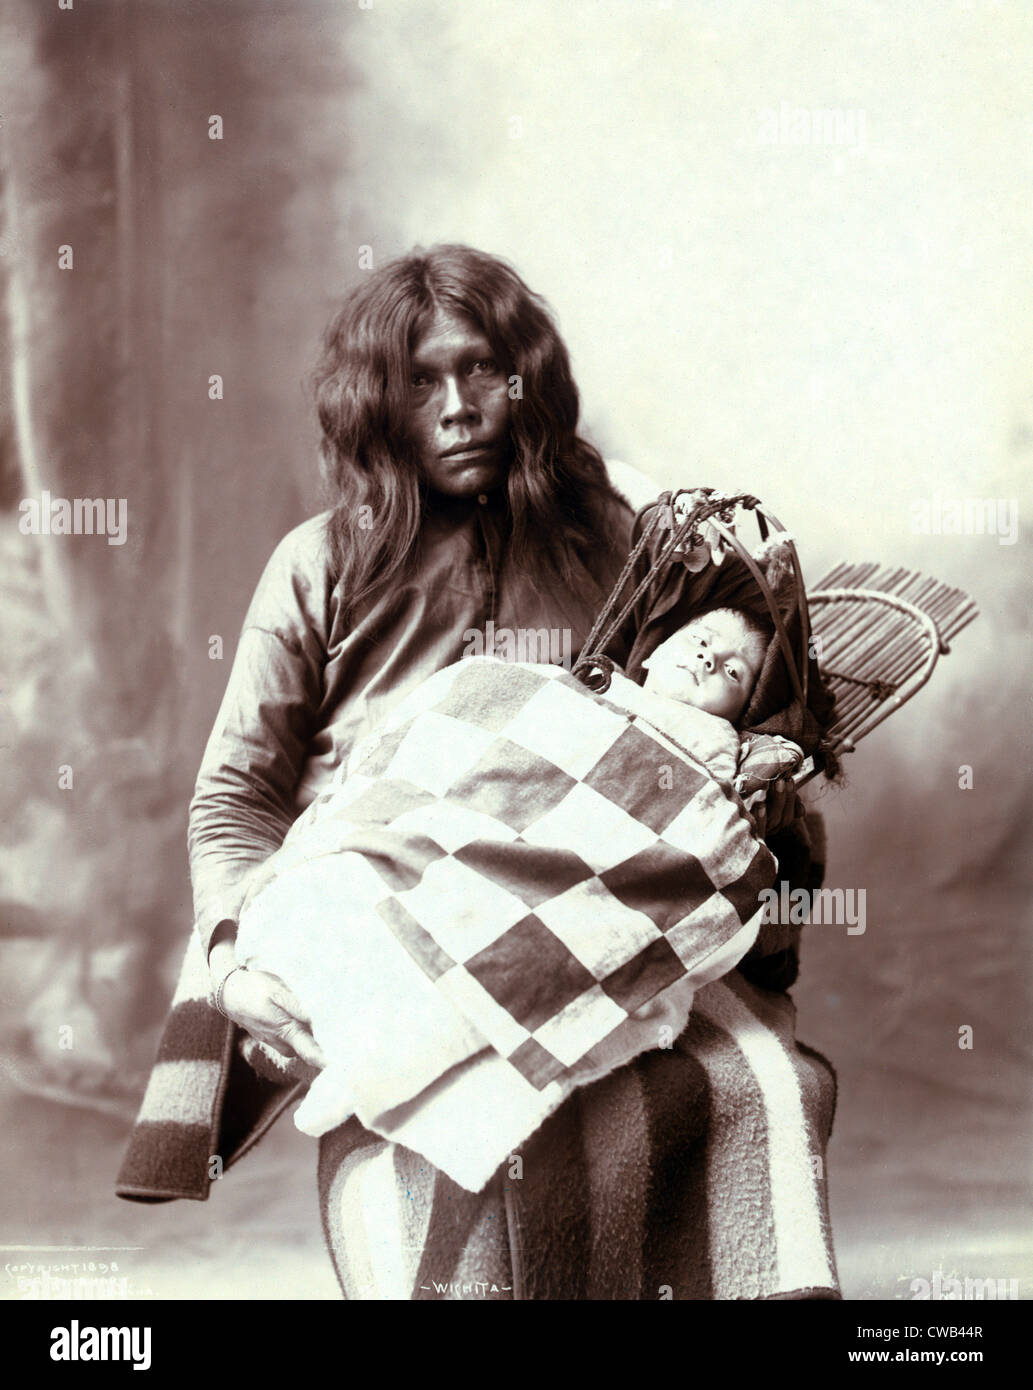 Indianische Frau und chiled, Frau und Kind von der Wichita Indianerstamm, Foto von Frank A. Rinehart, 1899. Stockfoto